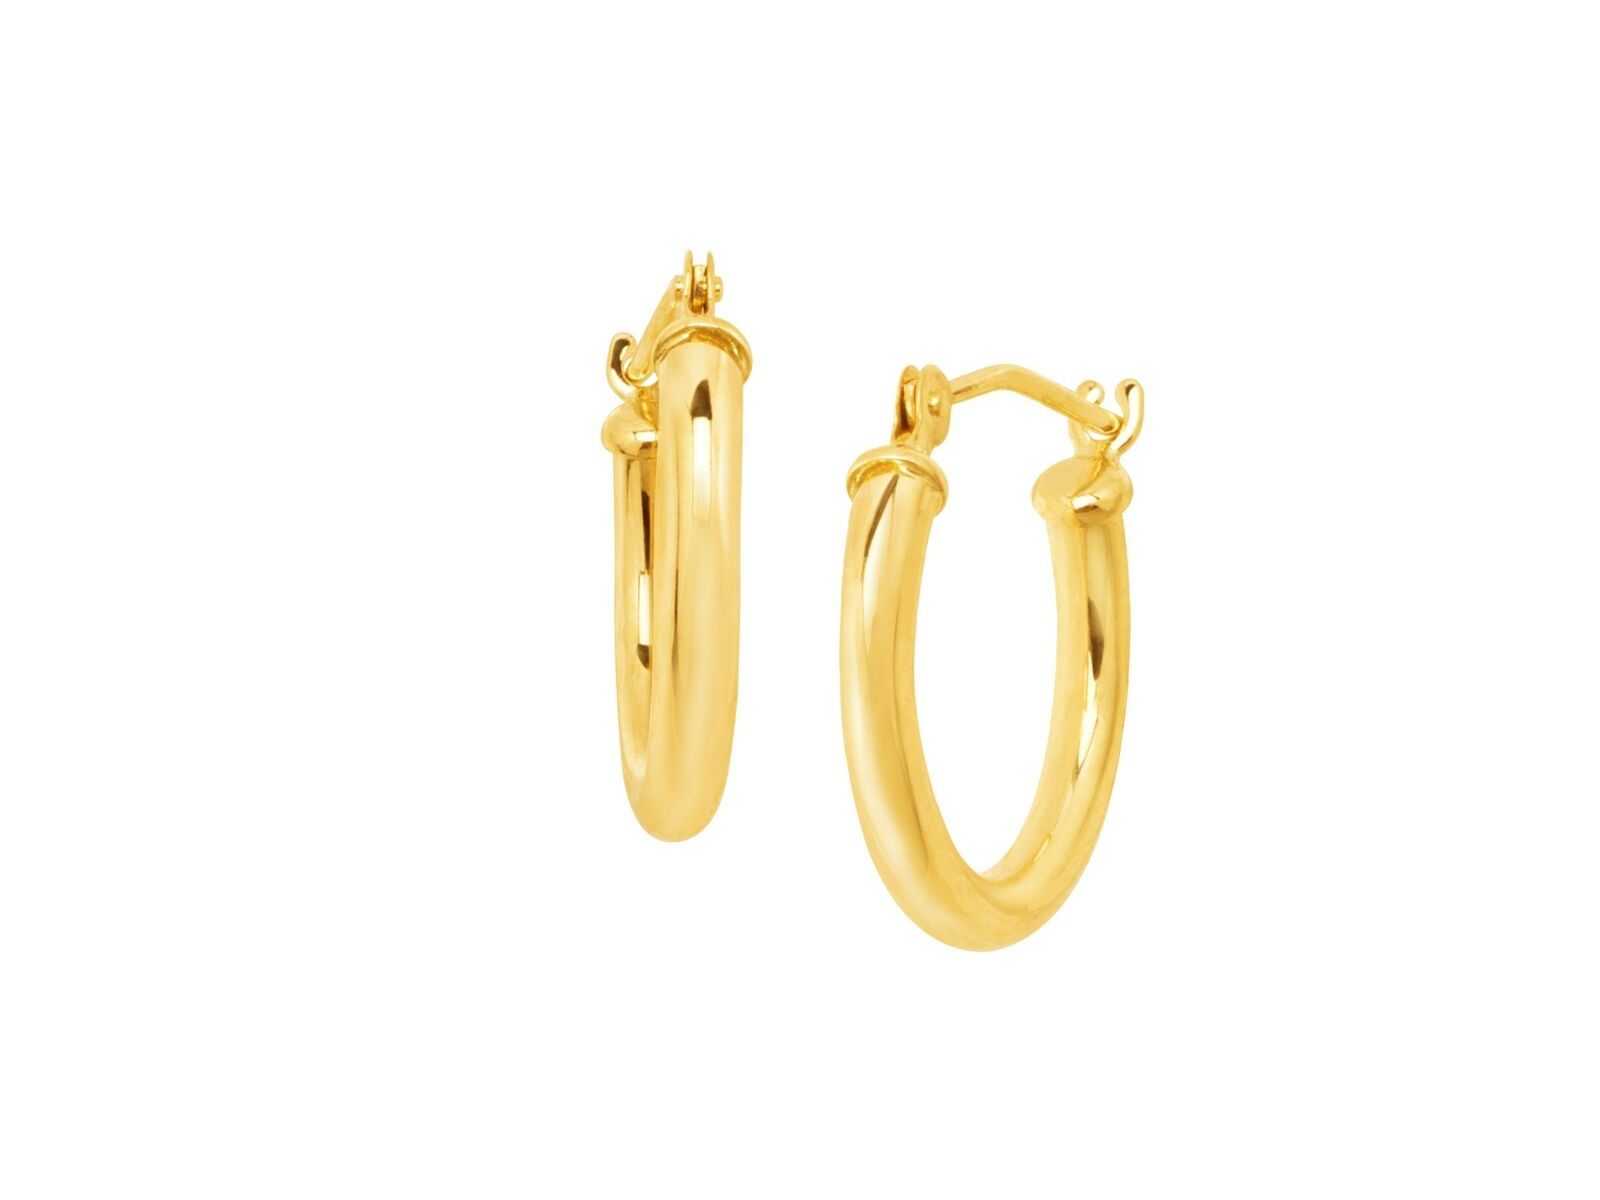 15 mm Round Tube Hoop Earrings in 14K Gold